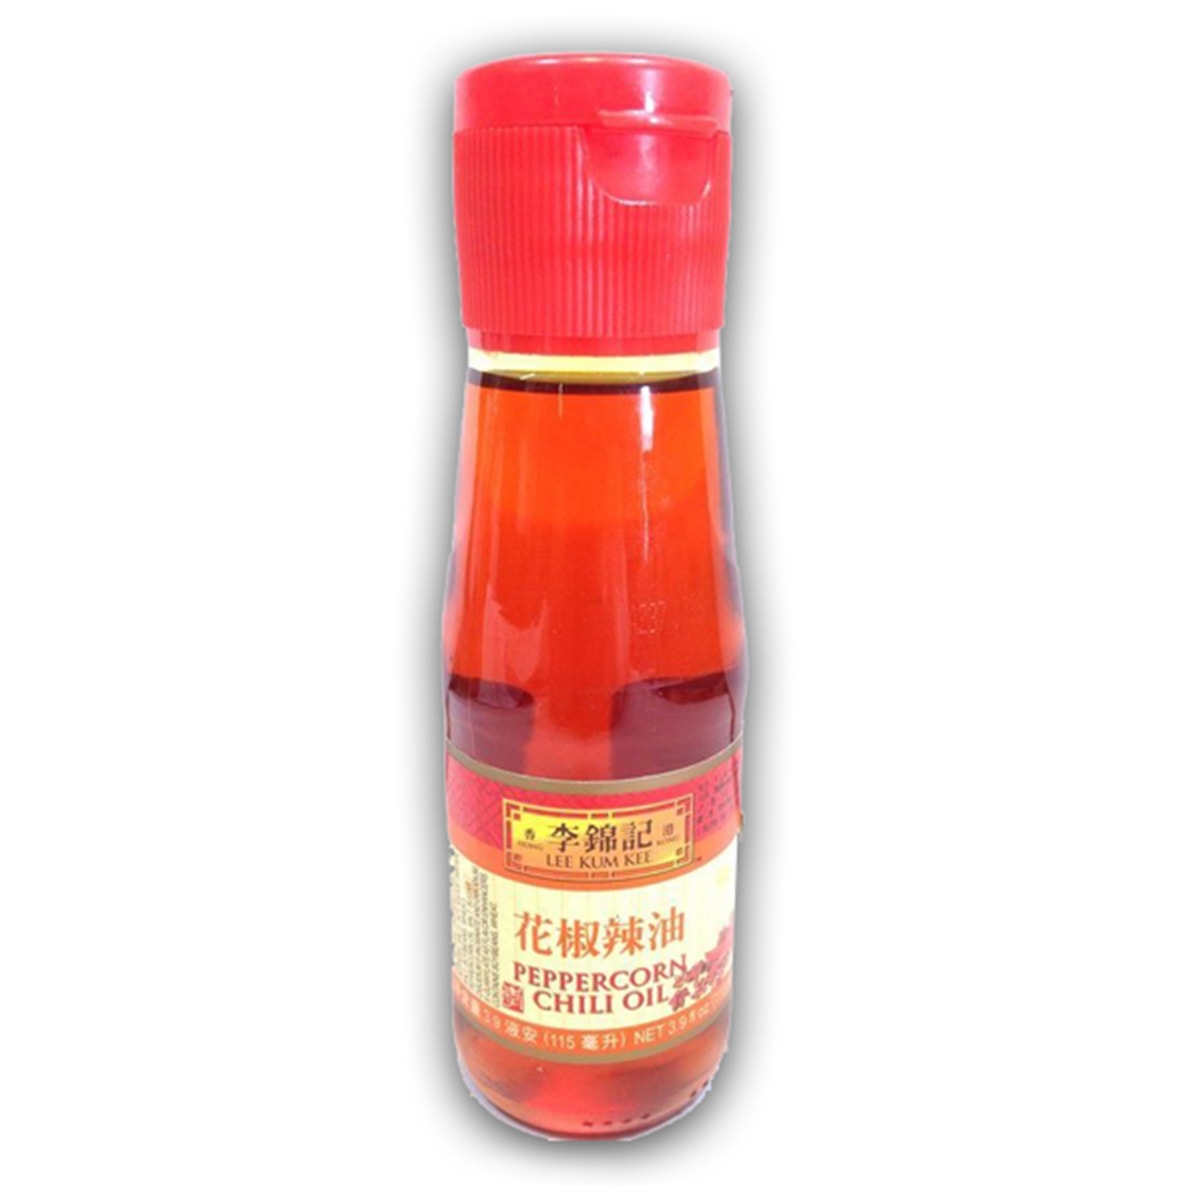 Buy Lee Kum Kee Peppercorn Chili Oil - 115 ml